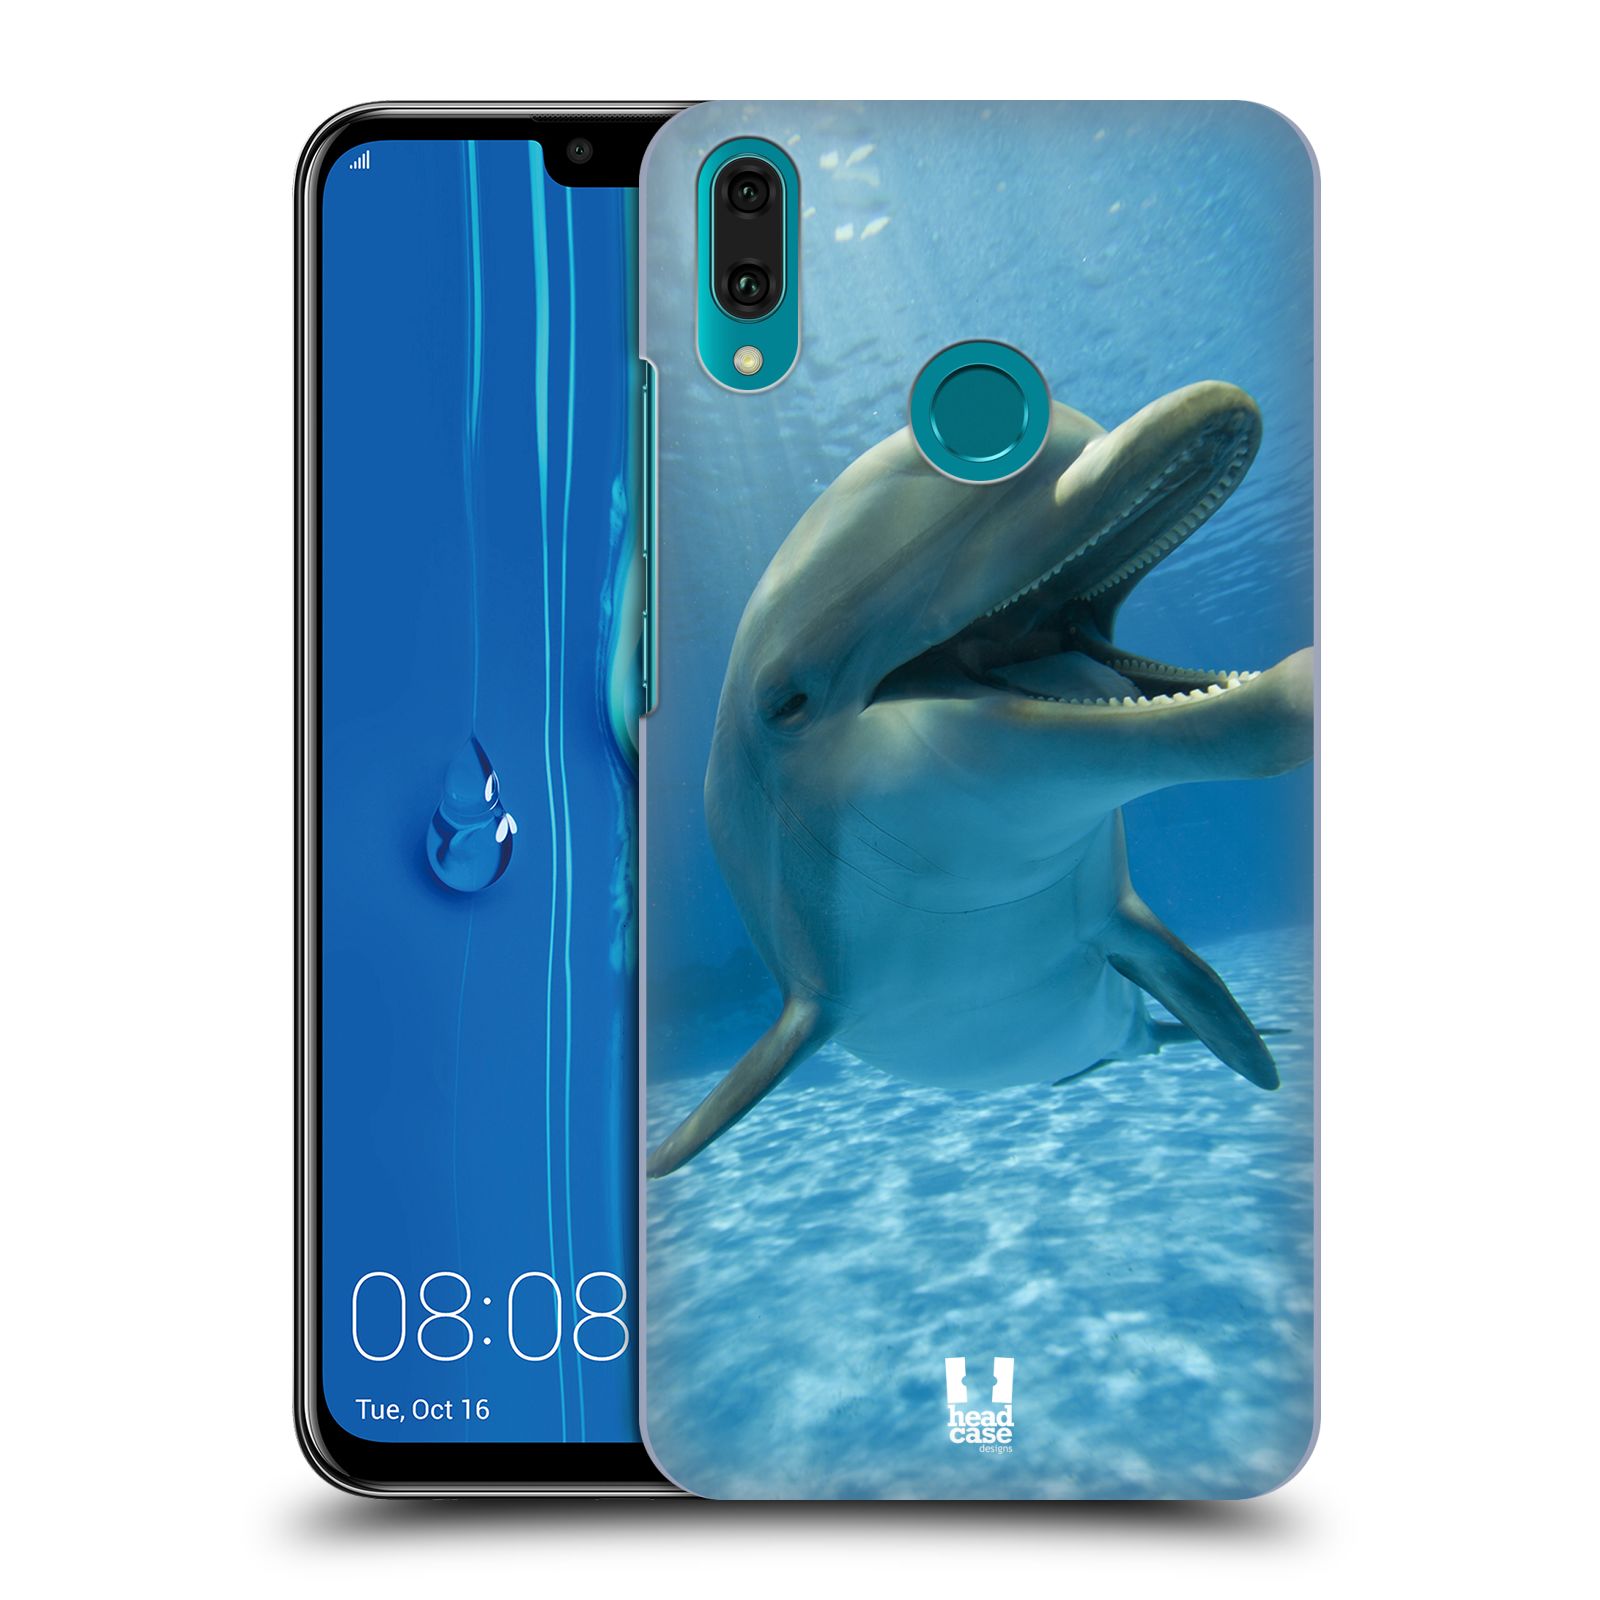 Pouzdro na mobil Huawei Y9 2019 - HEAD CASE - vzor Divočina, Divoký život a zvířata foto MODRÁ DELFÍN